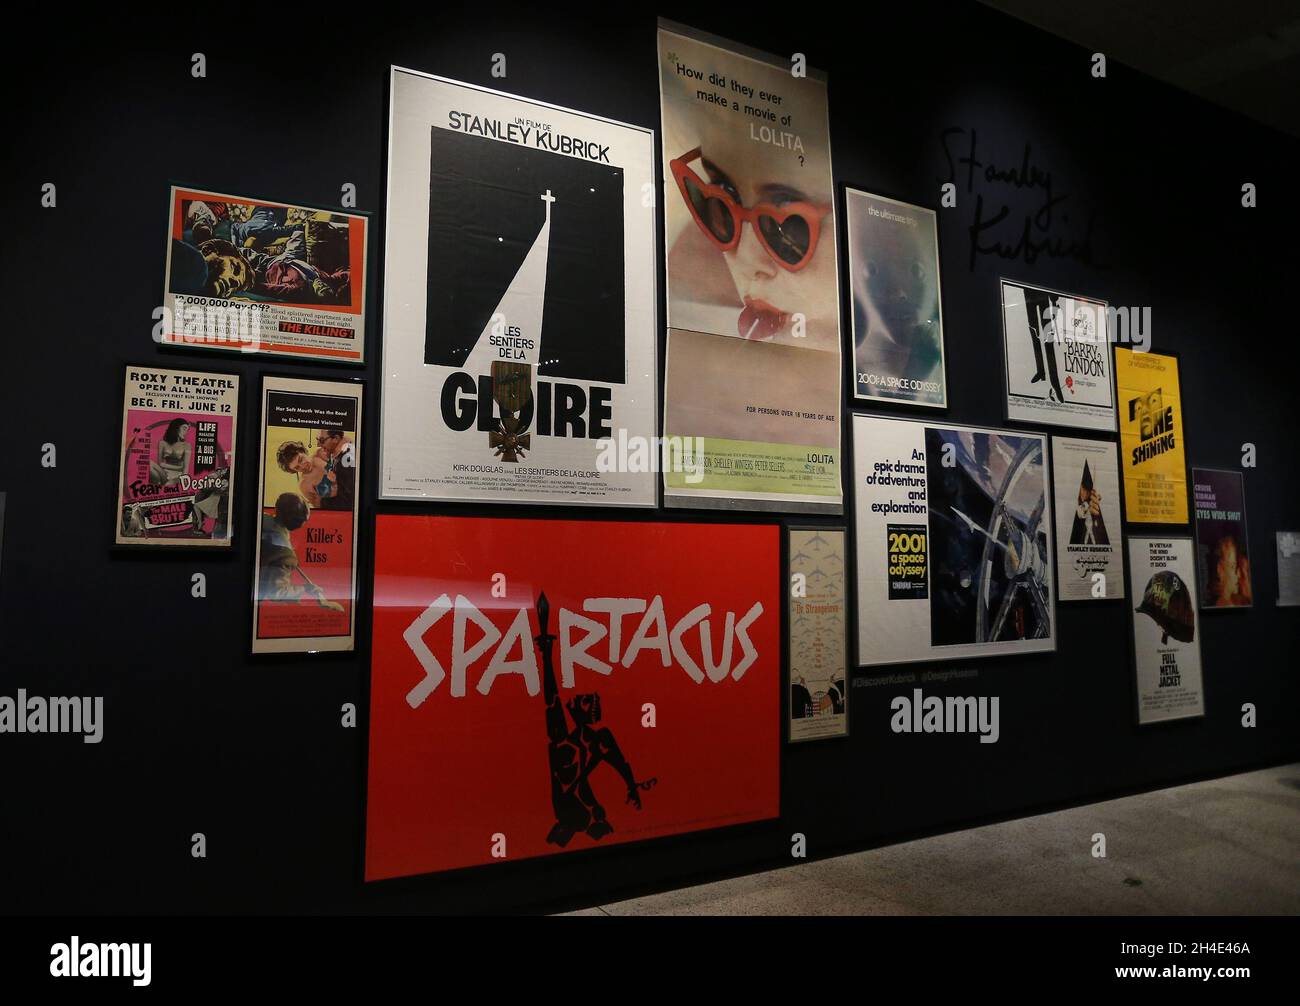 Filmplakate, die im Rahmen der Stanley Kubrick-Ausstellung im Design Museum in London gezeigt werden Stockfoto